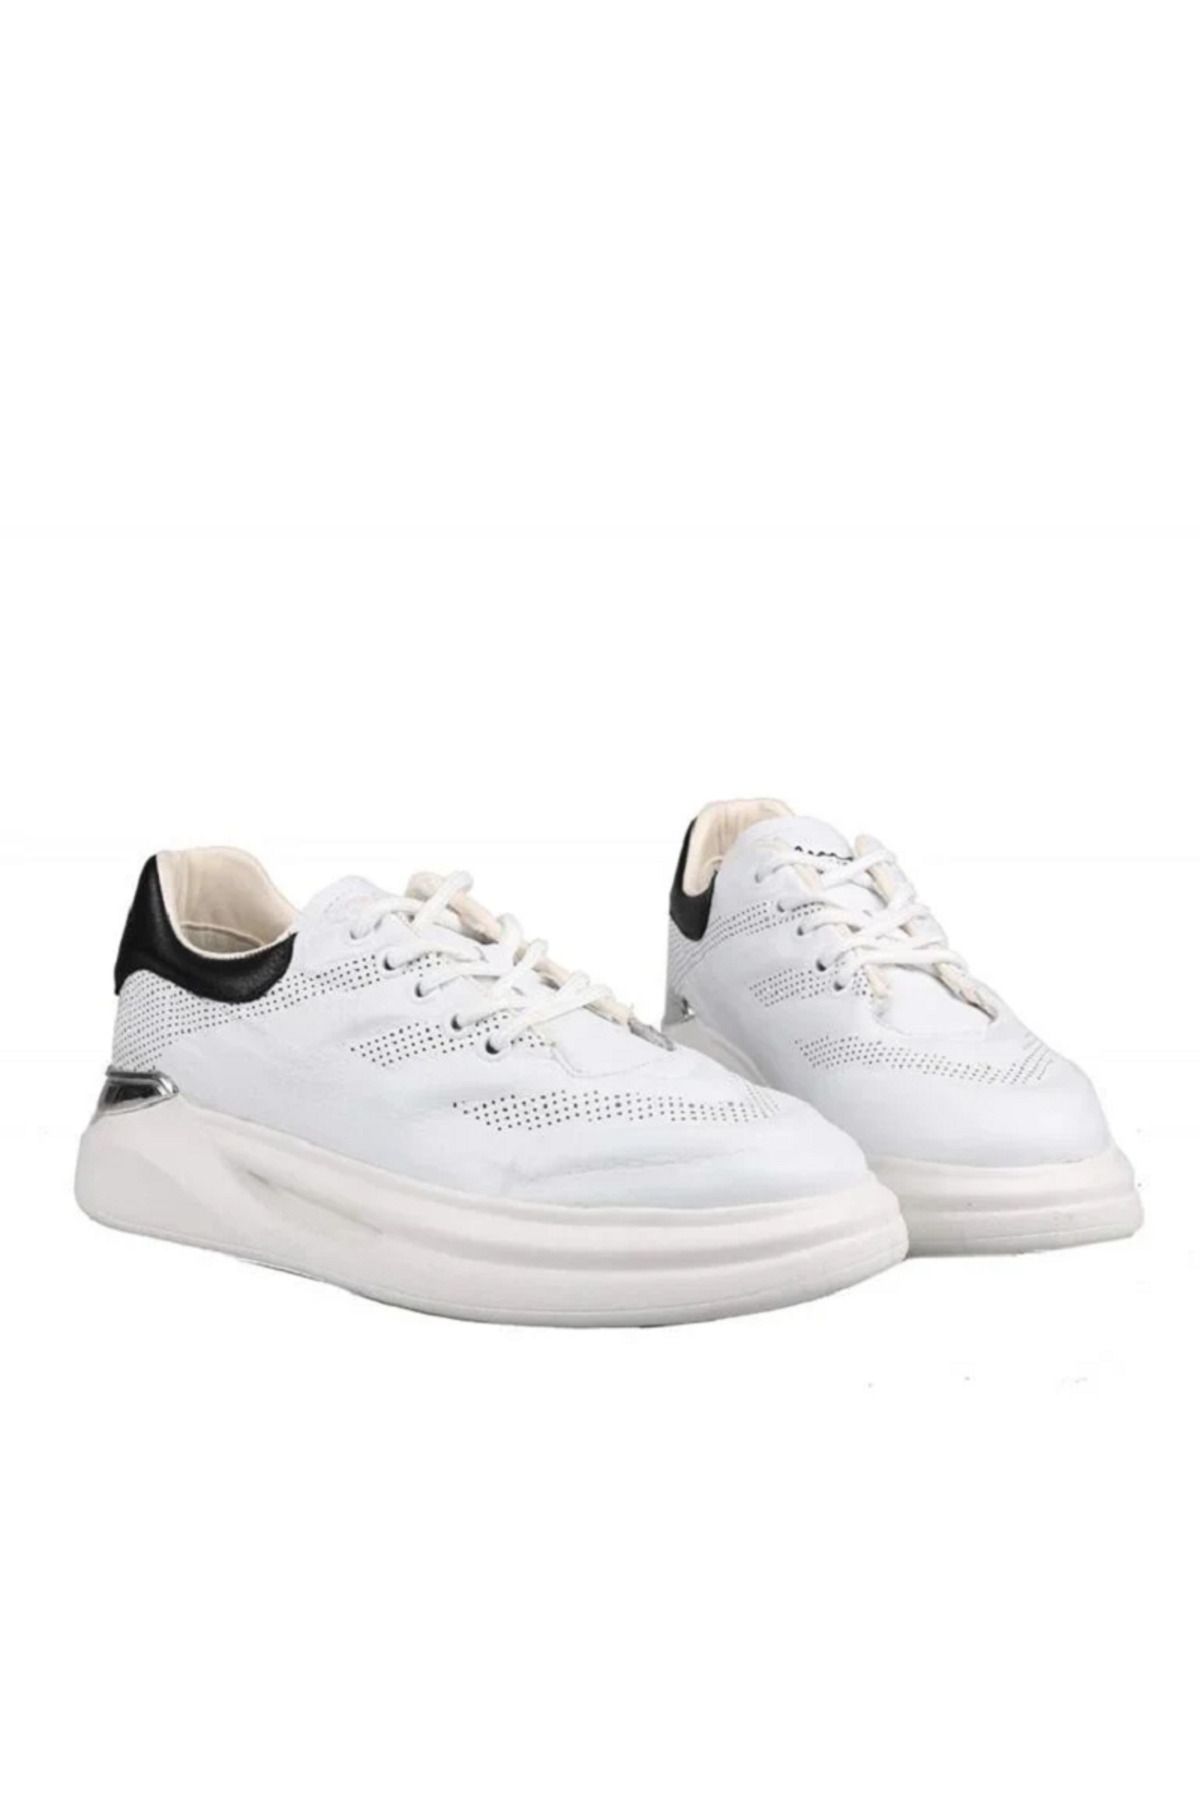 MARCOMEN 17387 Beyaz Renk Bağcıklı Deri Erkek Casual Ayakkabı M127